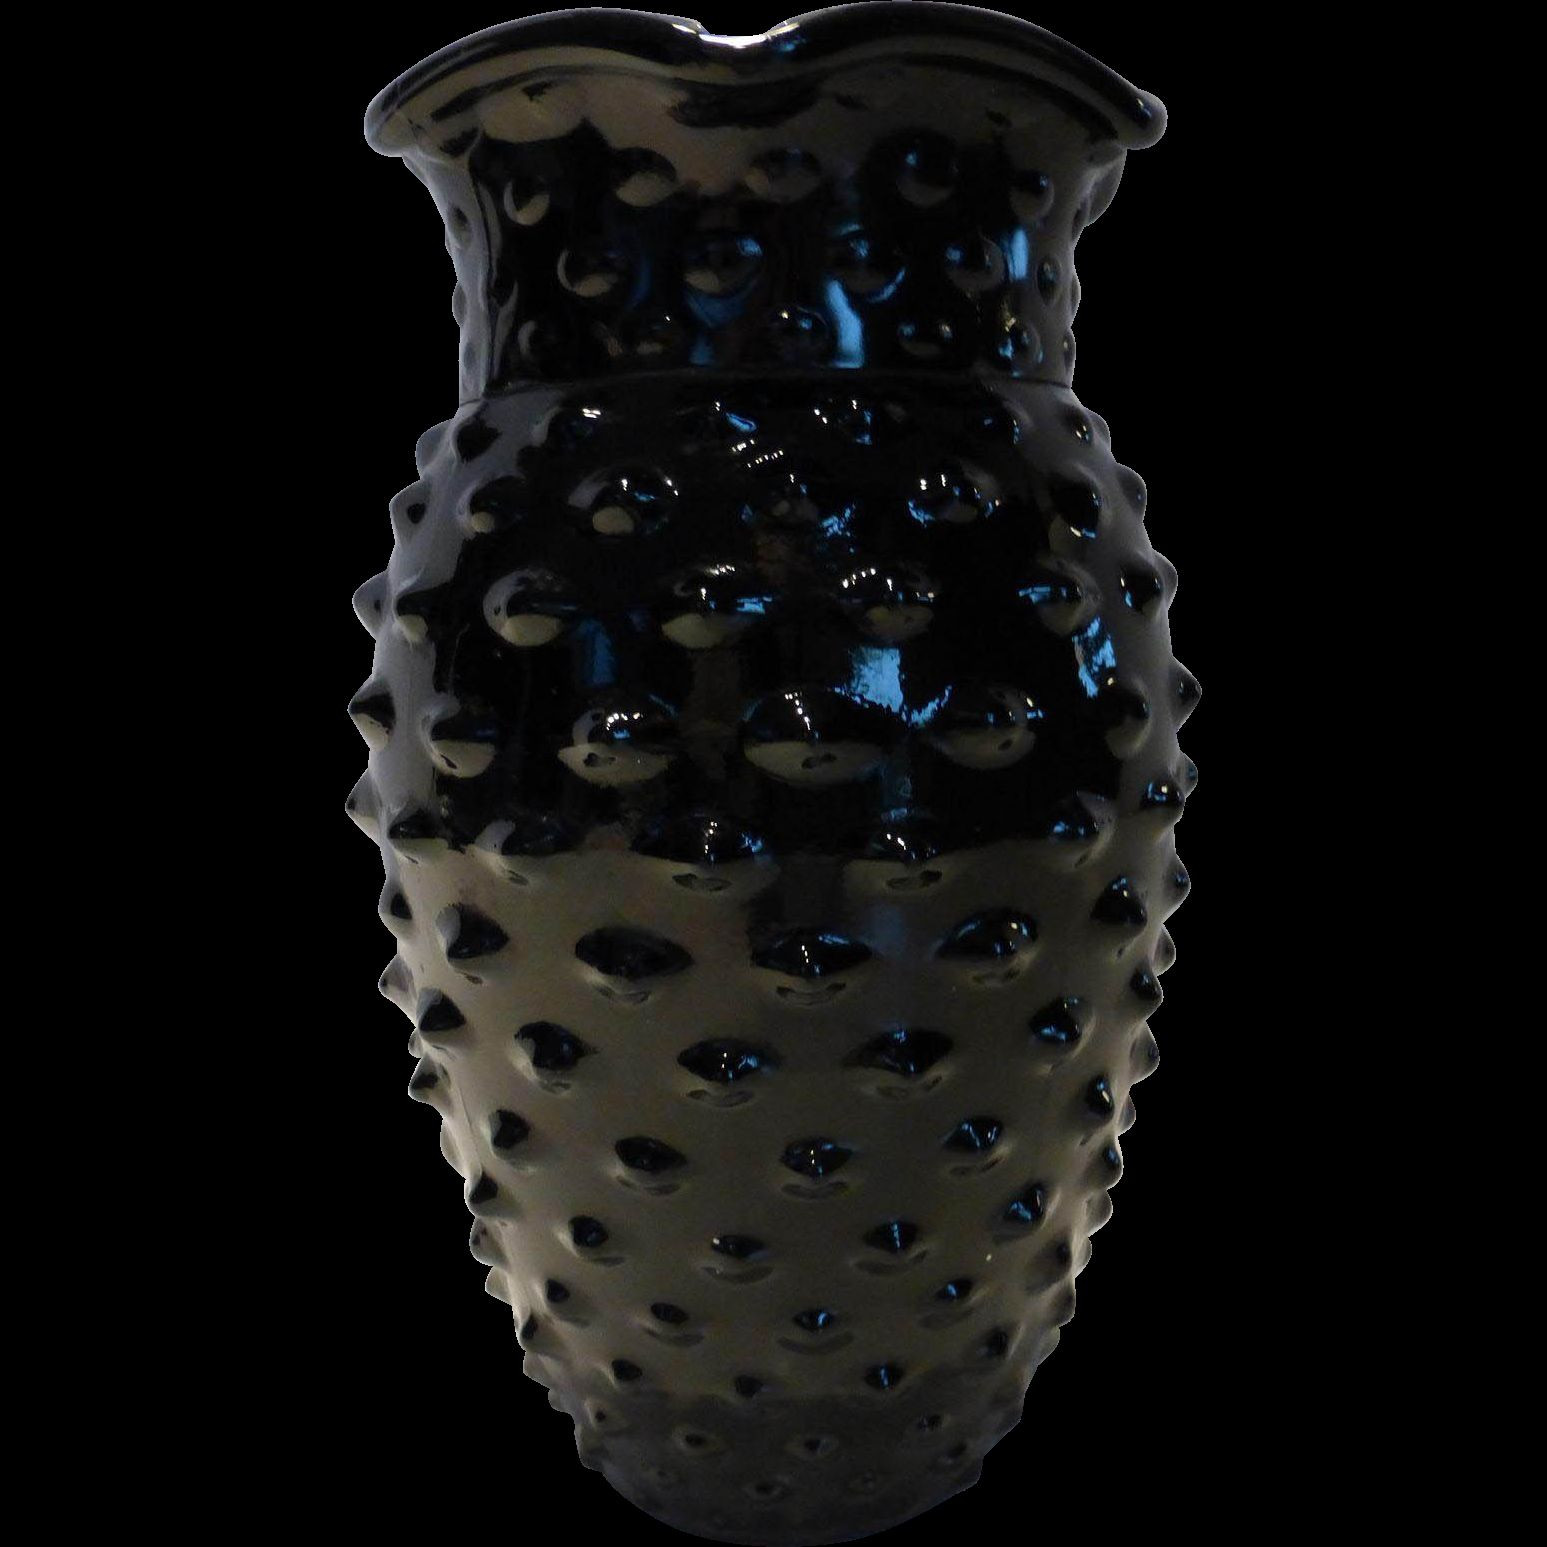 cobalt blue cut glass vase of 22 hobnail glass vase the weekly world in download wallpaper large black glass vase